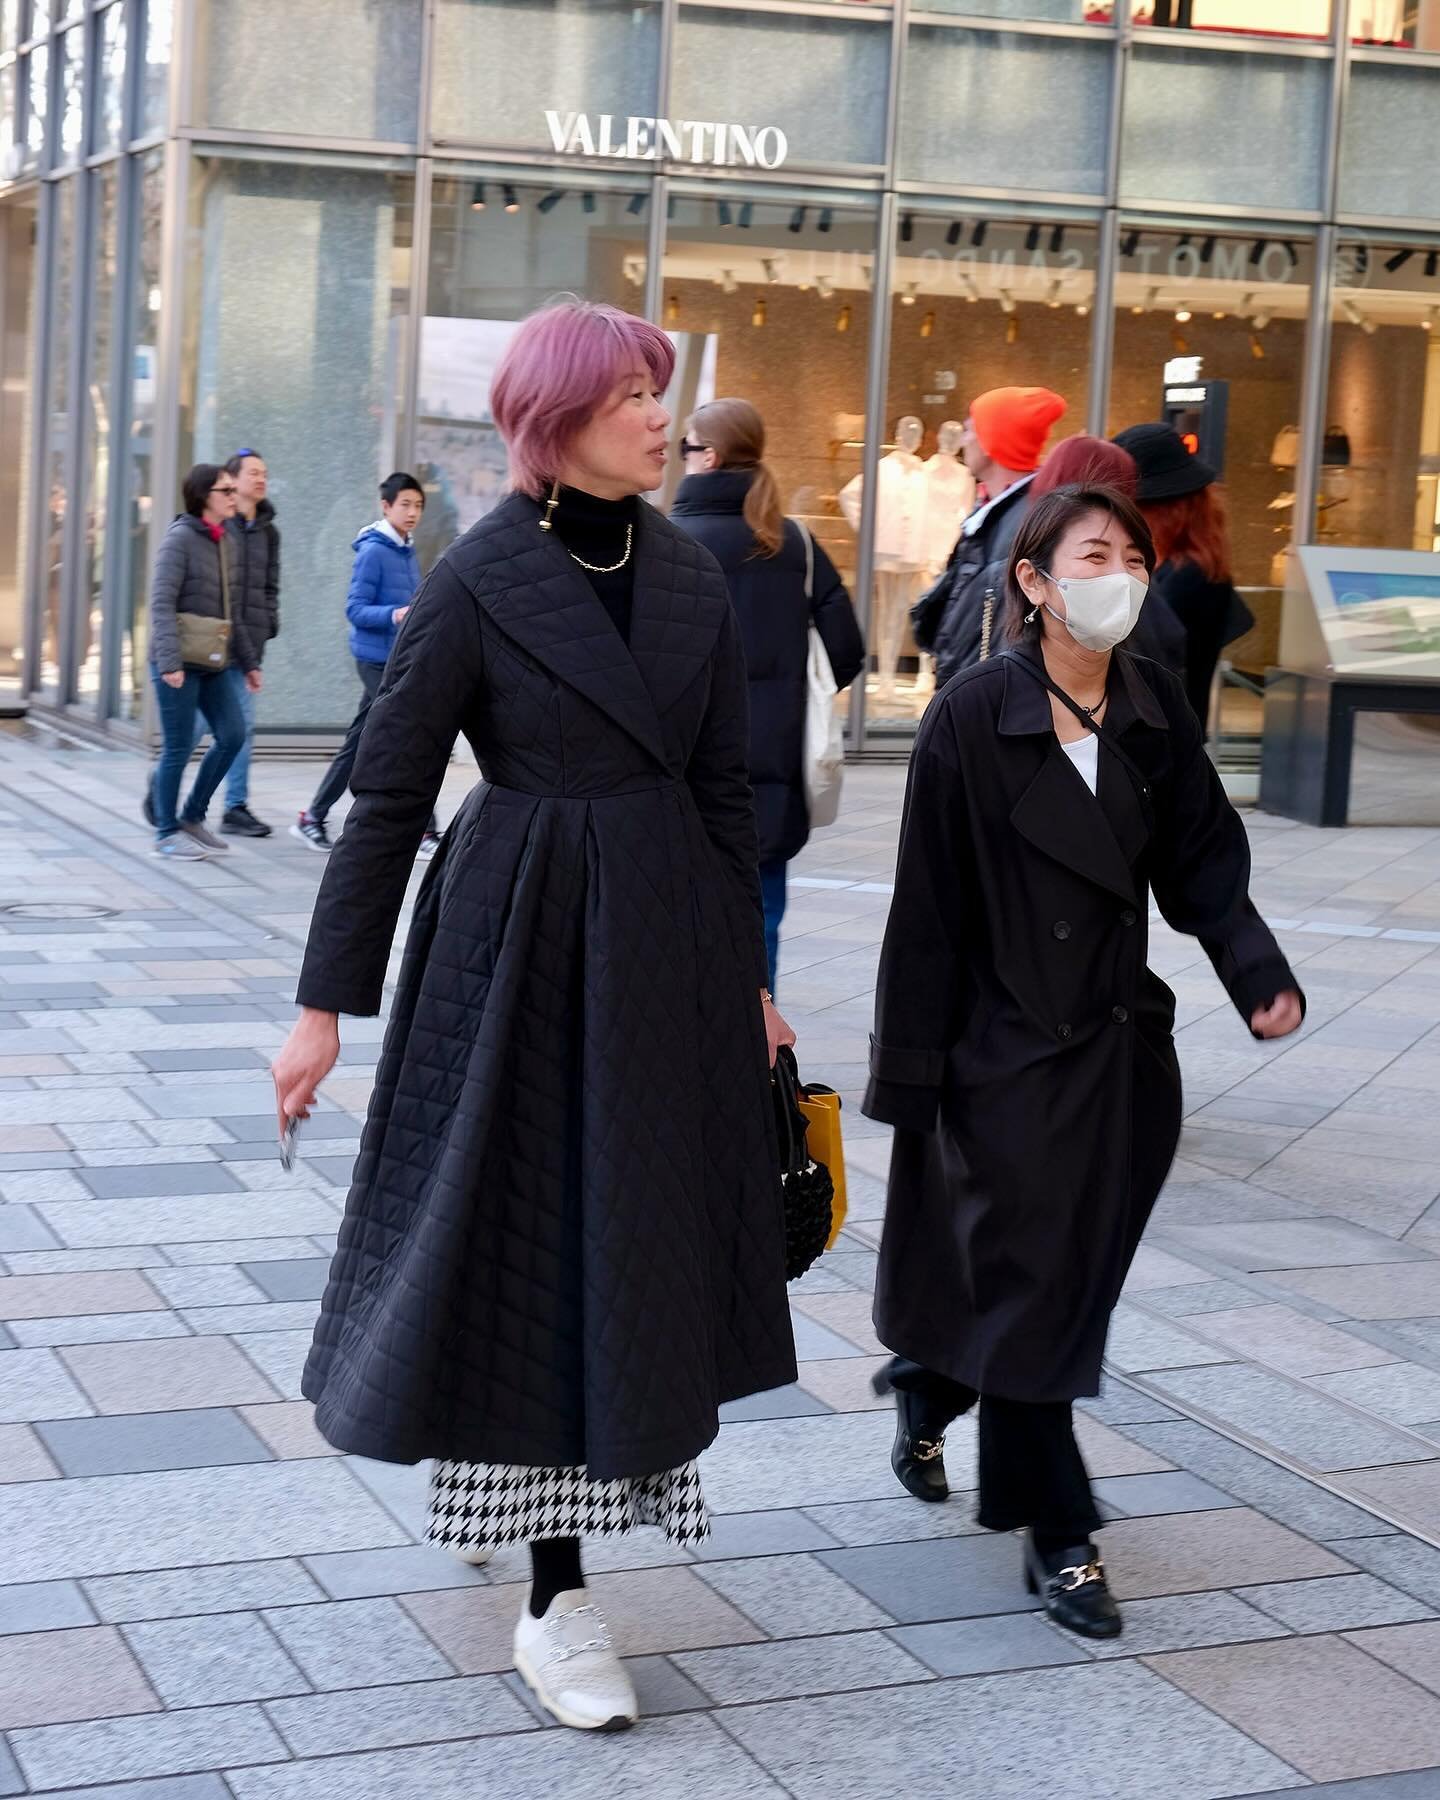 Tokyo fashionweek streetstyle - photos by @benjaminkwanphoto 
:
:
:
:
:
#rakutenfashionweektokyo #tokyofashionweek #streetstyle #streetfashion #styleinspo #fashionlooks #japanesefashion #omotesando #outfitinspo